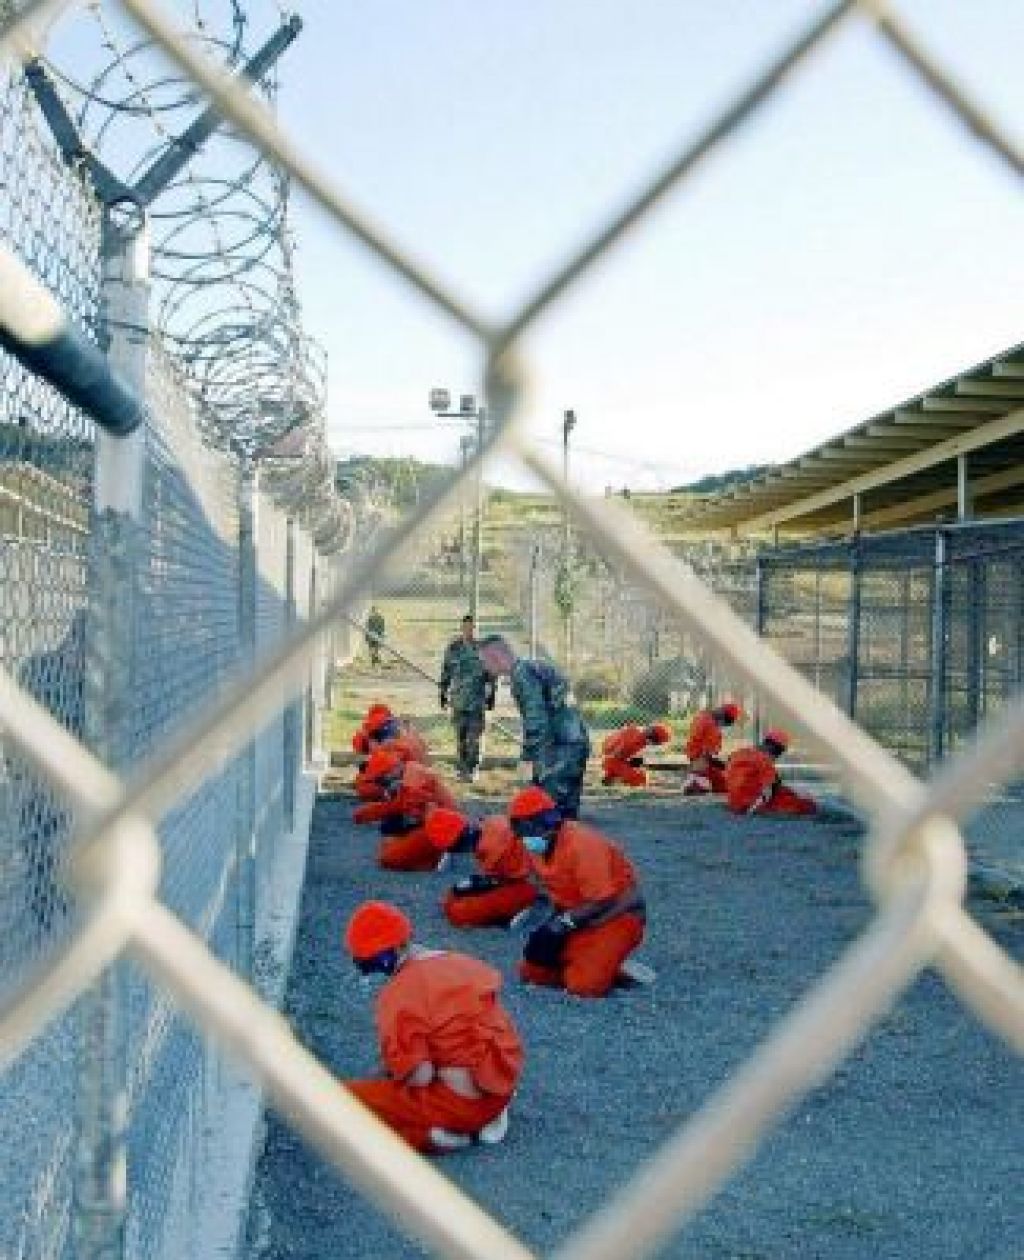 Bushevi zakoni ogrožajo zaprte v Guantanamu